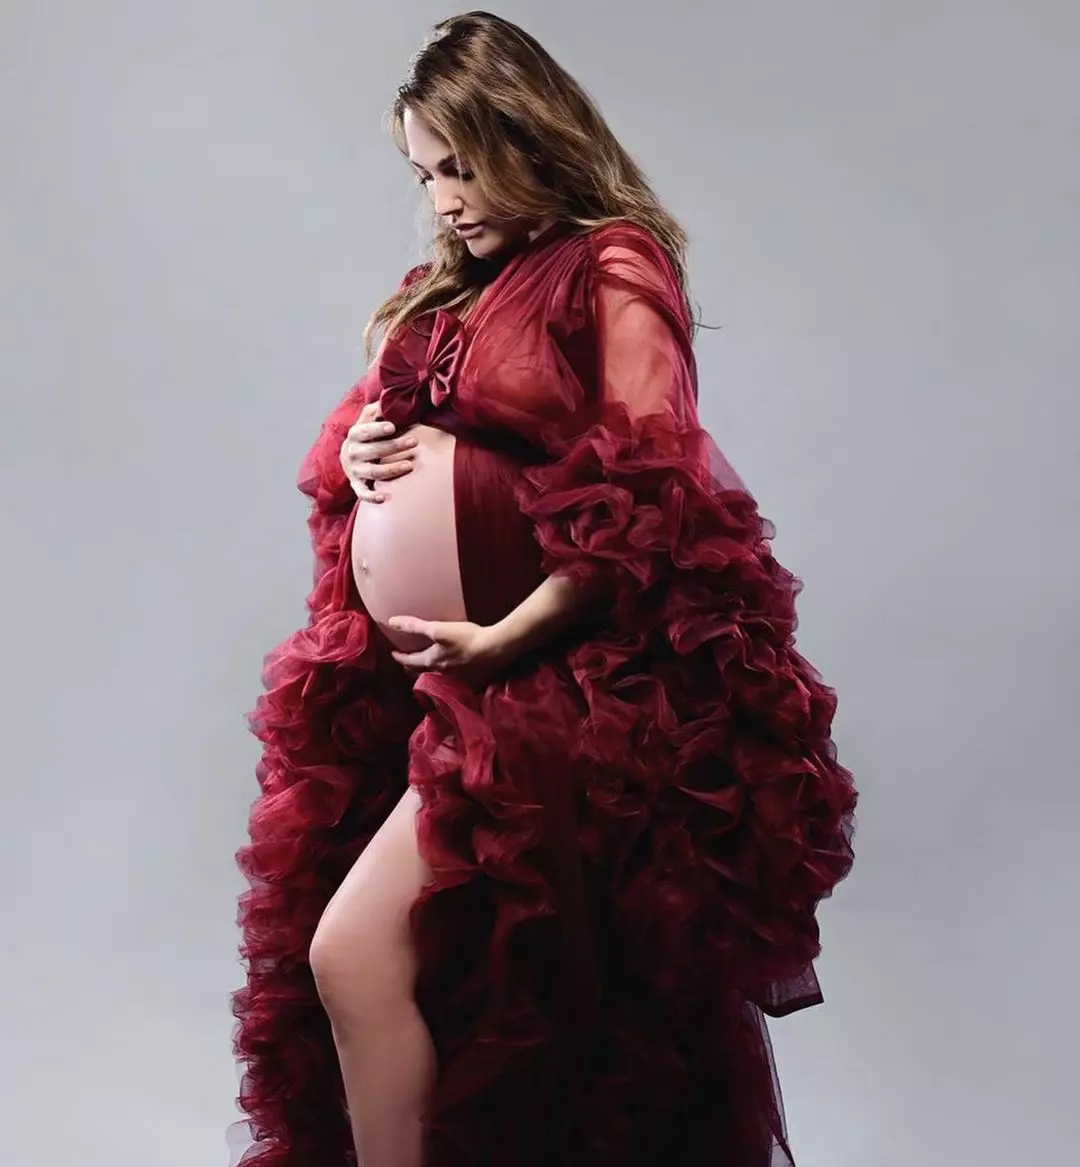 Мер'єм Узерлі на останньому місяці вагітності